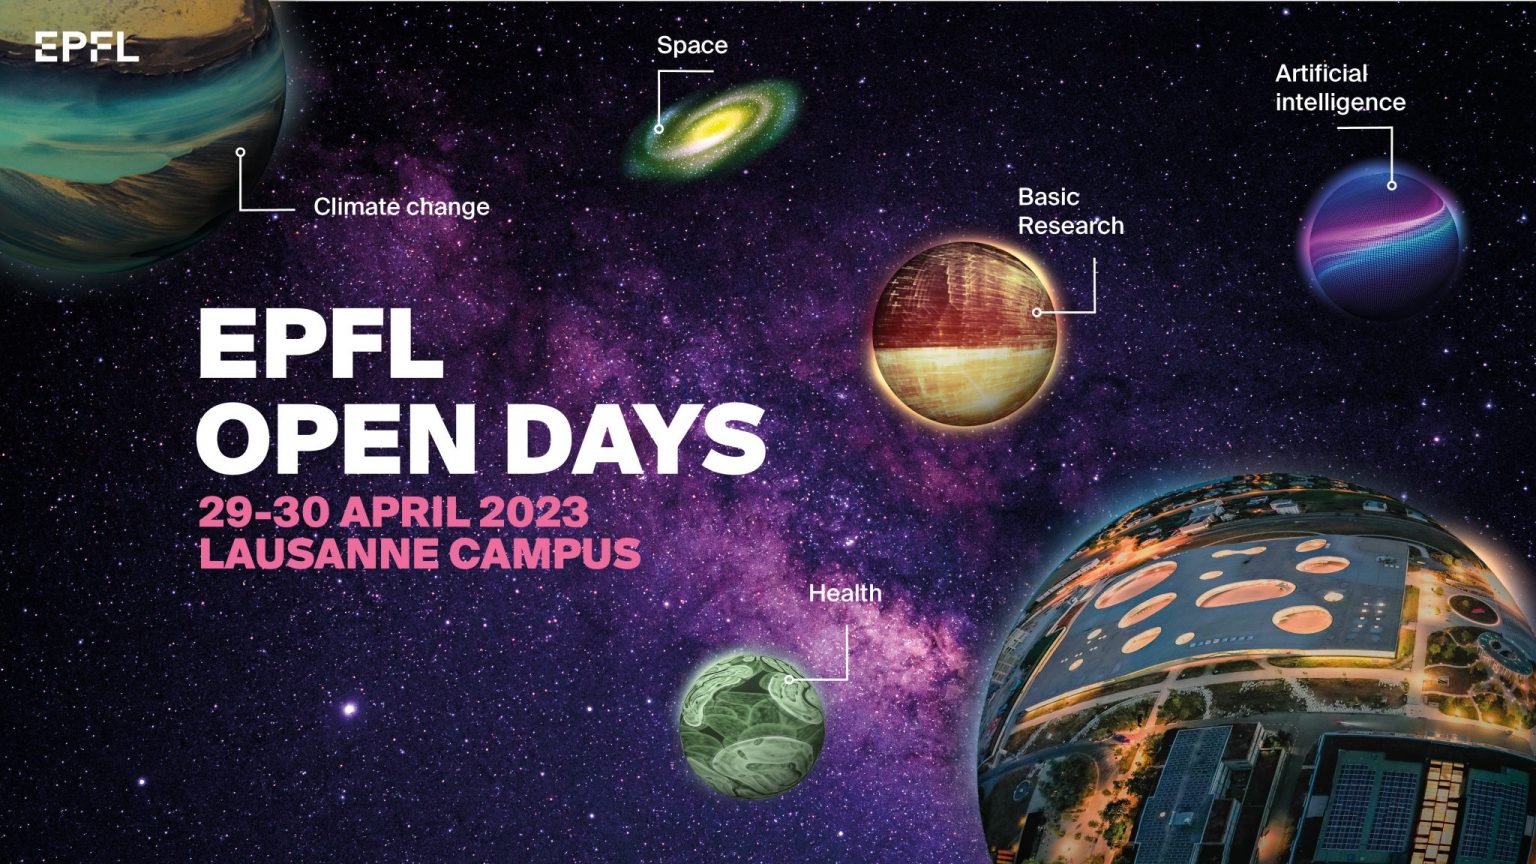 EPFL Open Days 2023